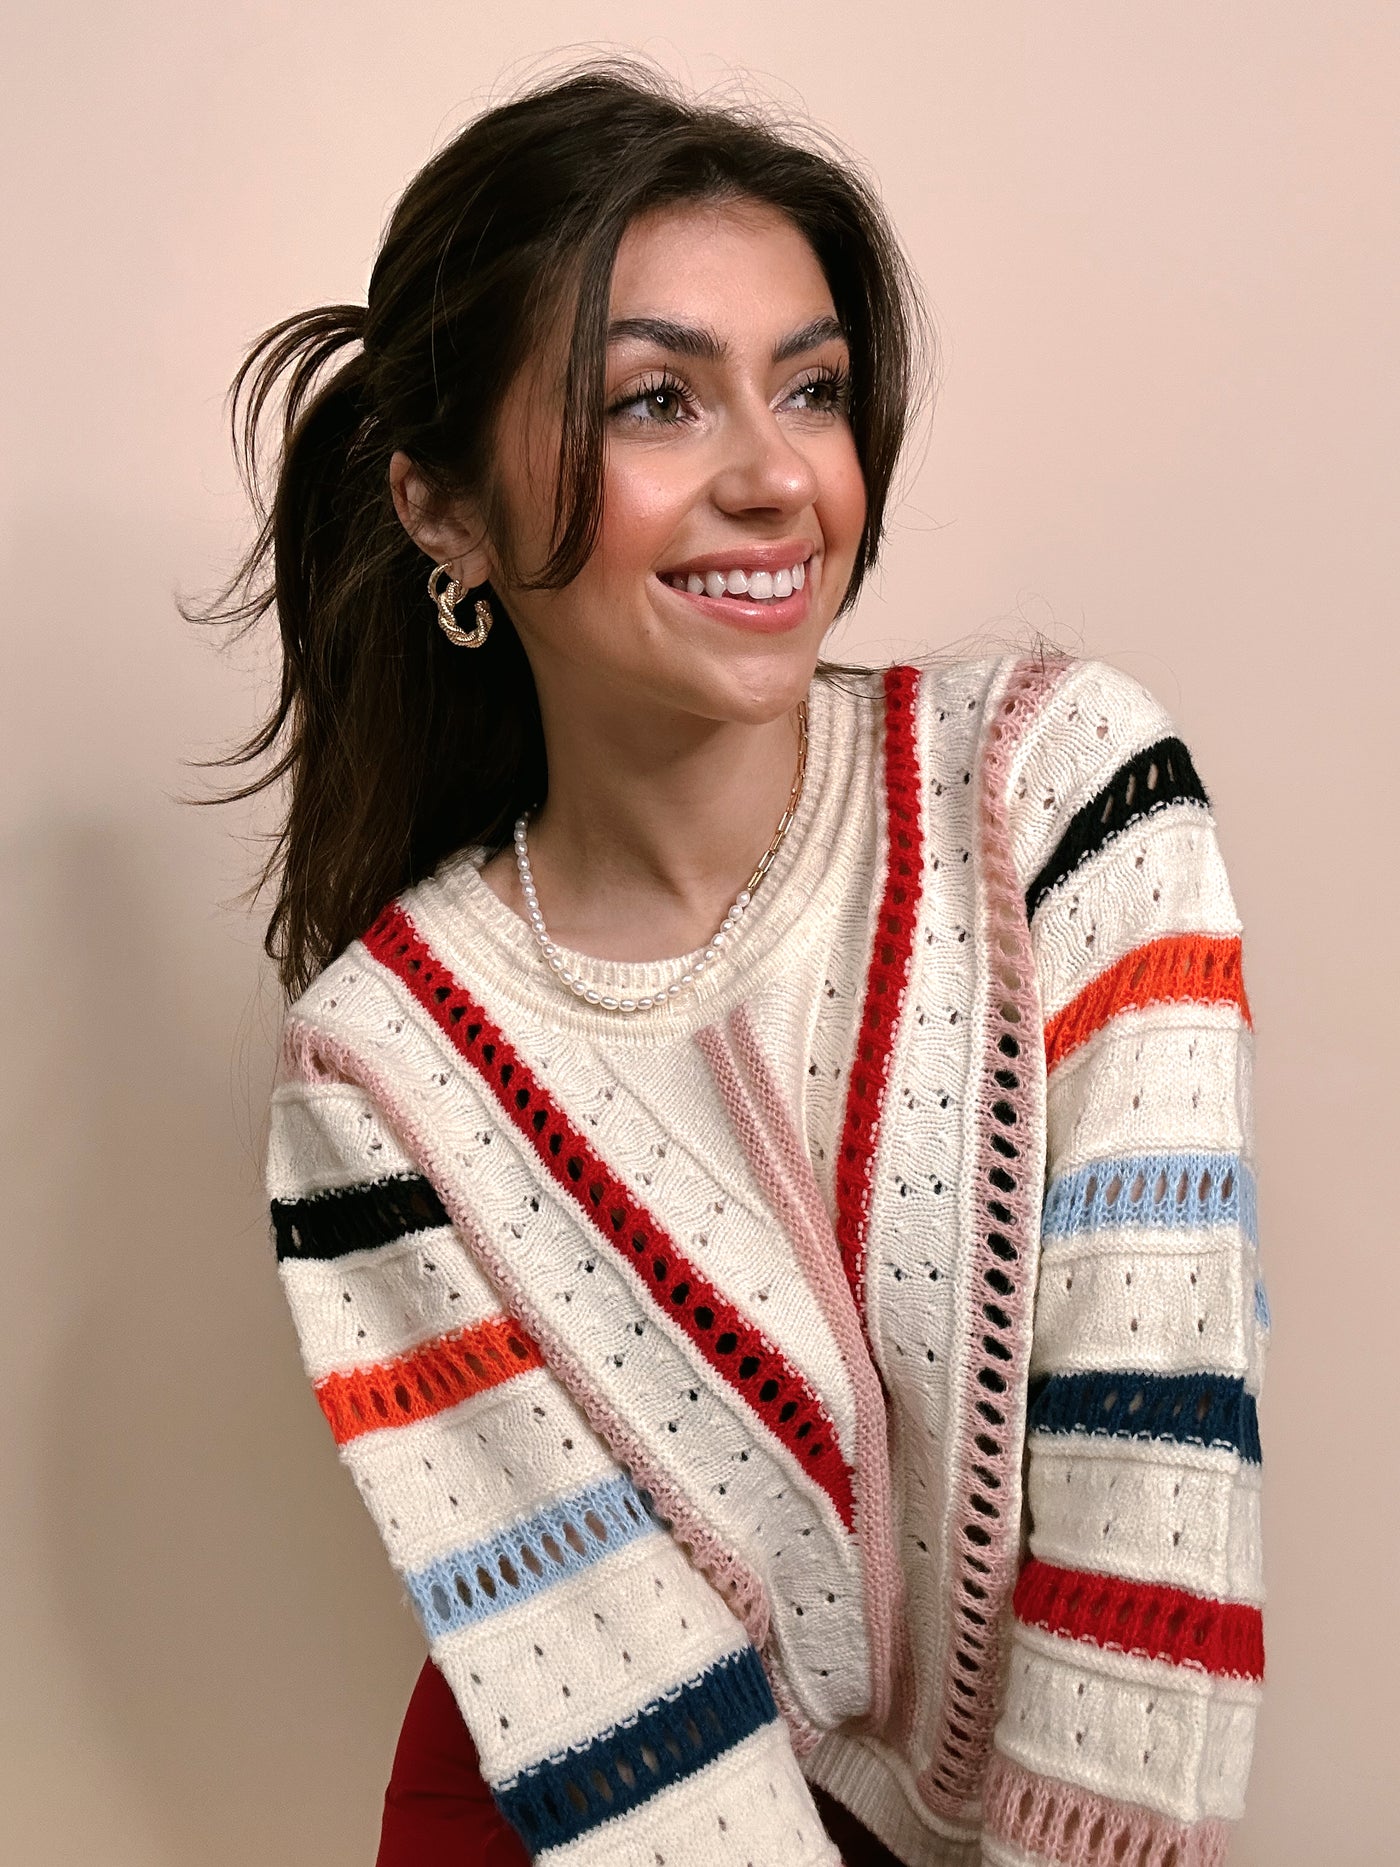 Multicolored Stripe Sweater